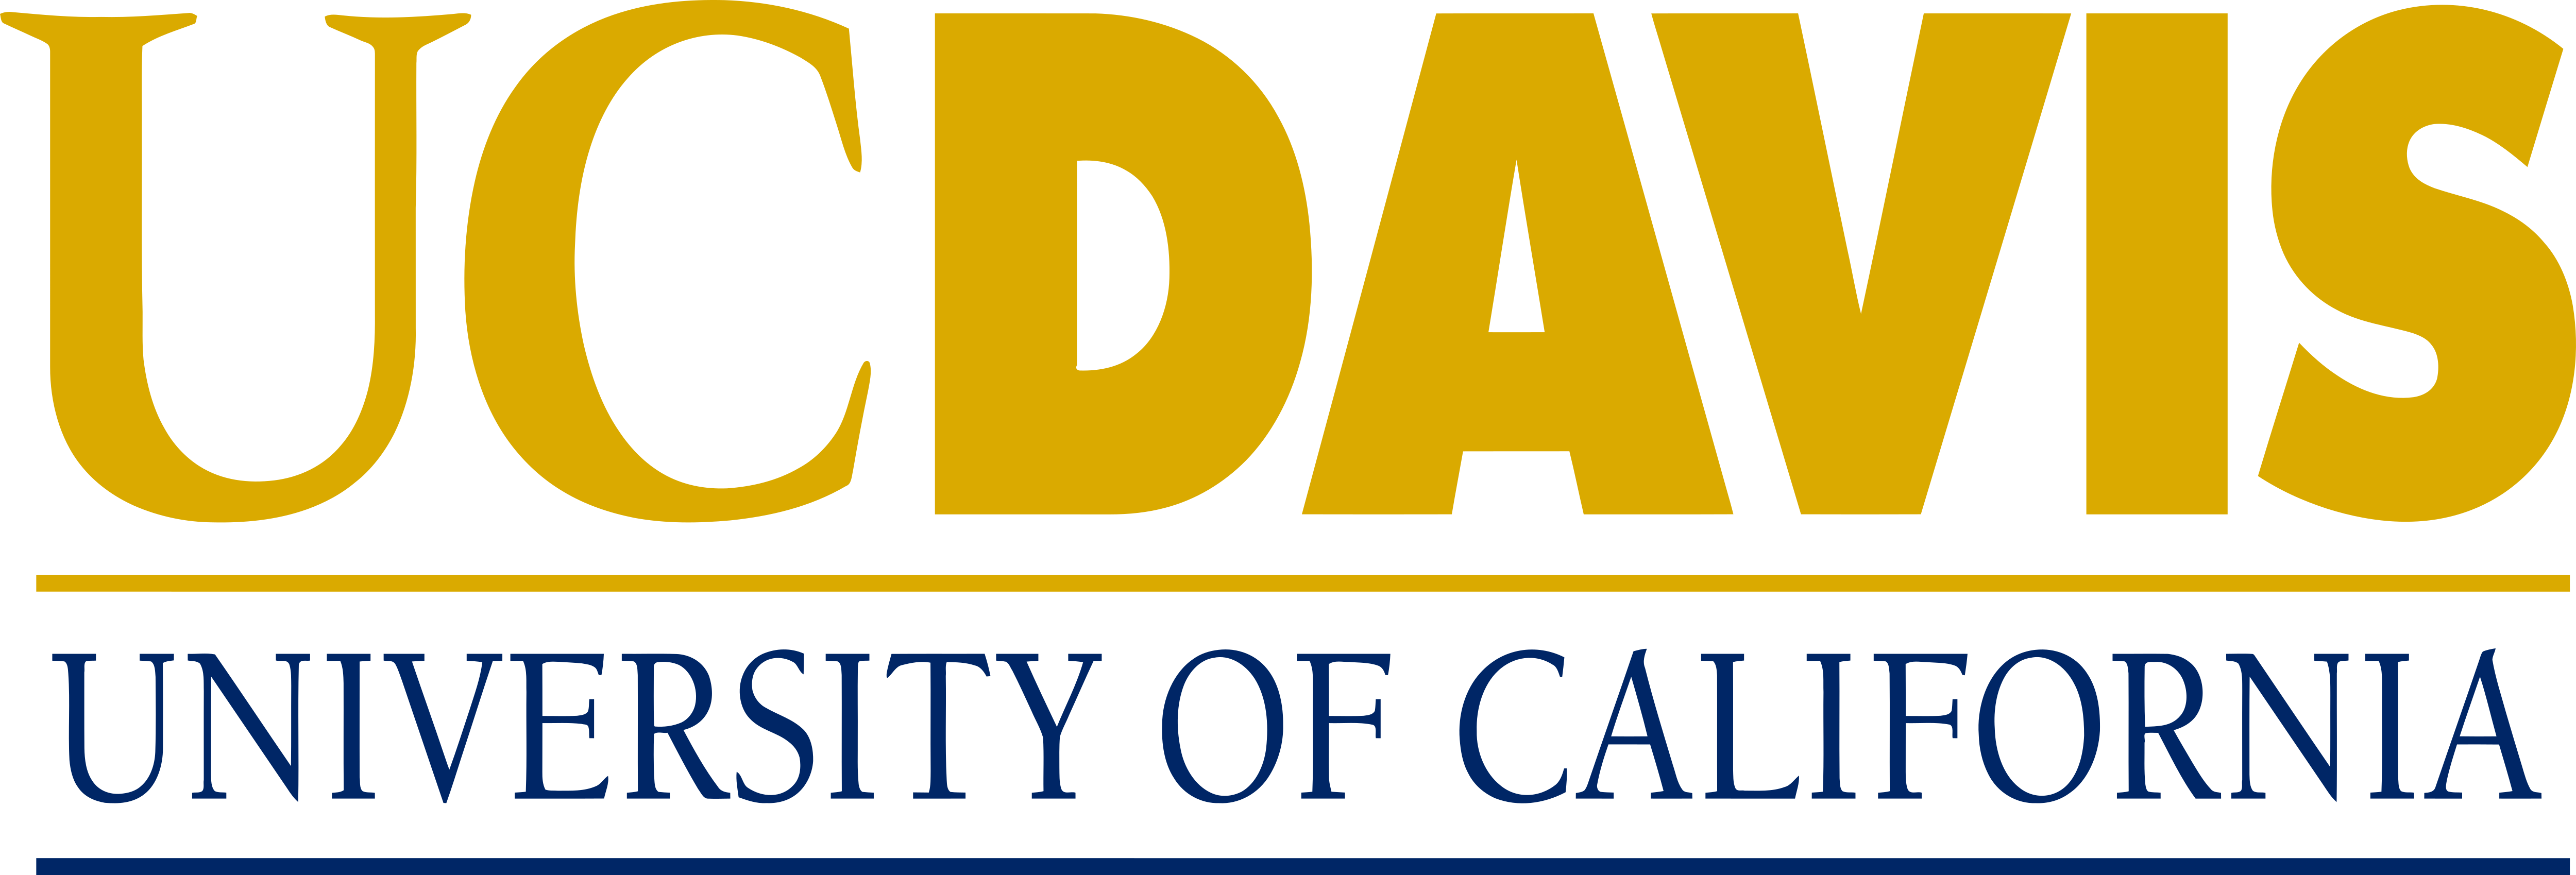 UC Davis – Logos Download